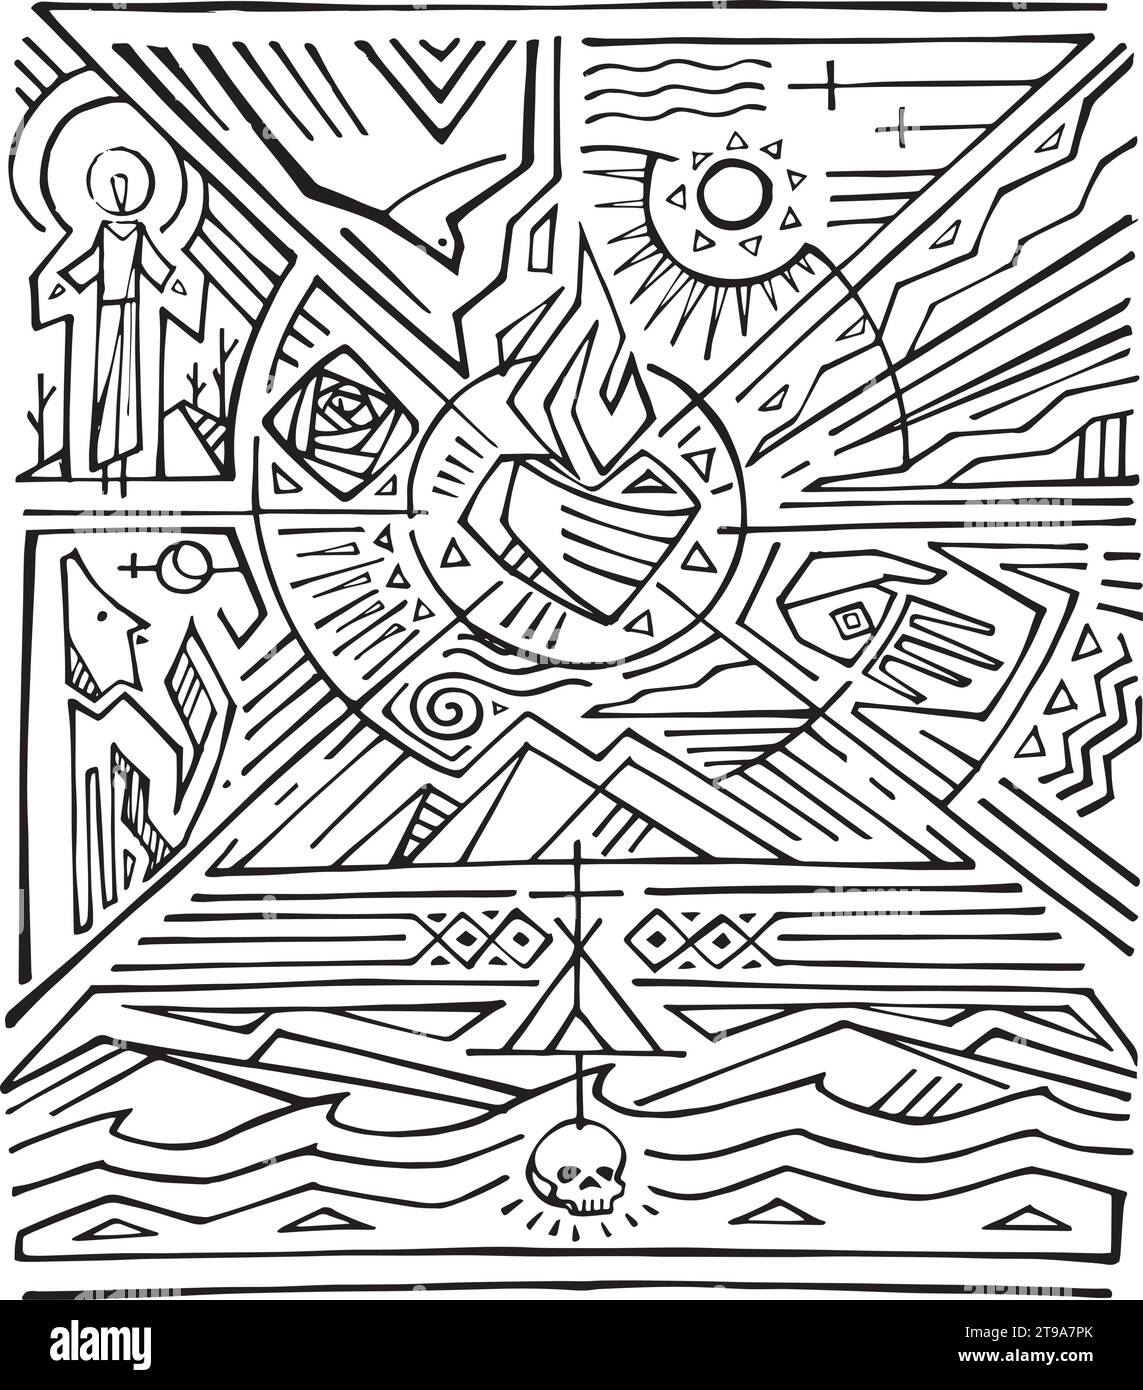 Illustration vectorielle dessinée à la main ou dessin de Saint François d'Assise avec la nature et les symboles religieux Illustration de Vecteur